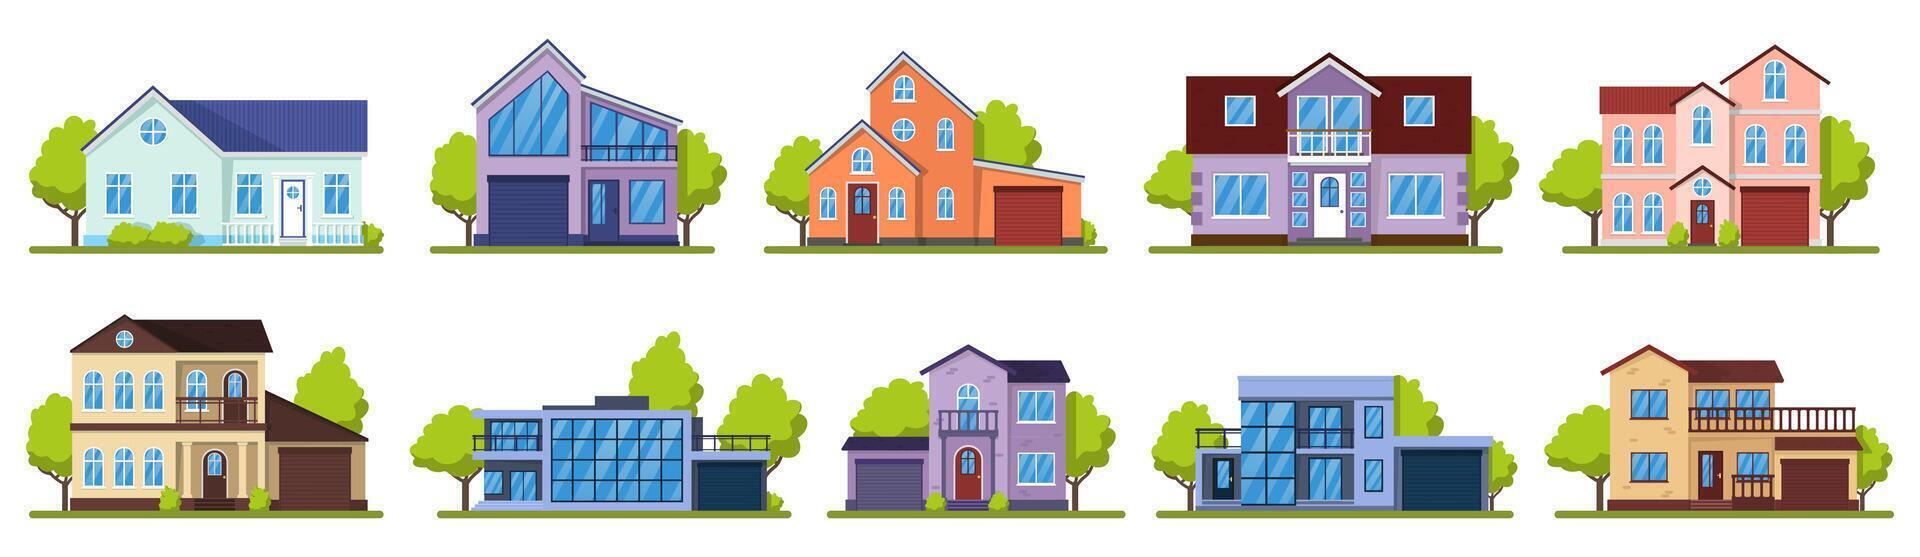 buitenwijk huizen. leven echt landgoed huis, modern land villa's. huis gevels, straat architectuur vector illustratie pictogrammen reeks